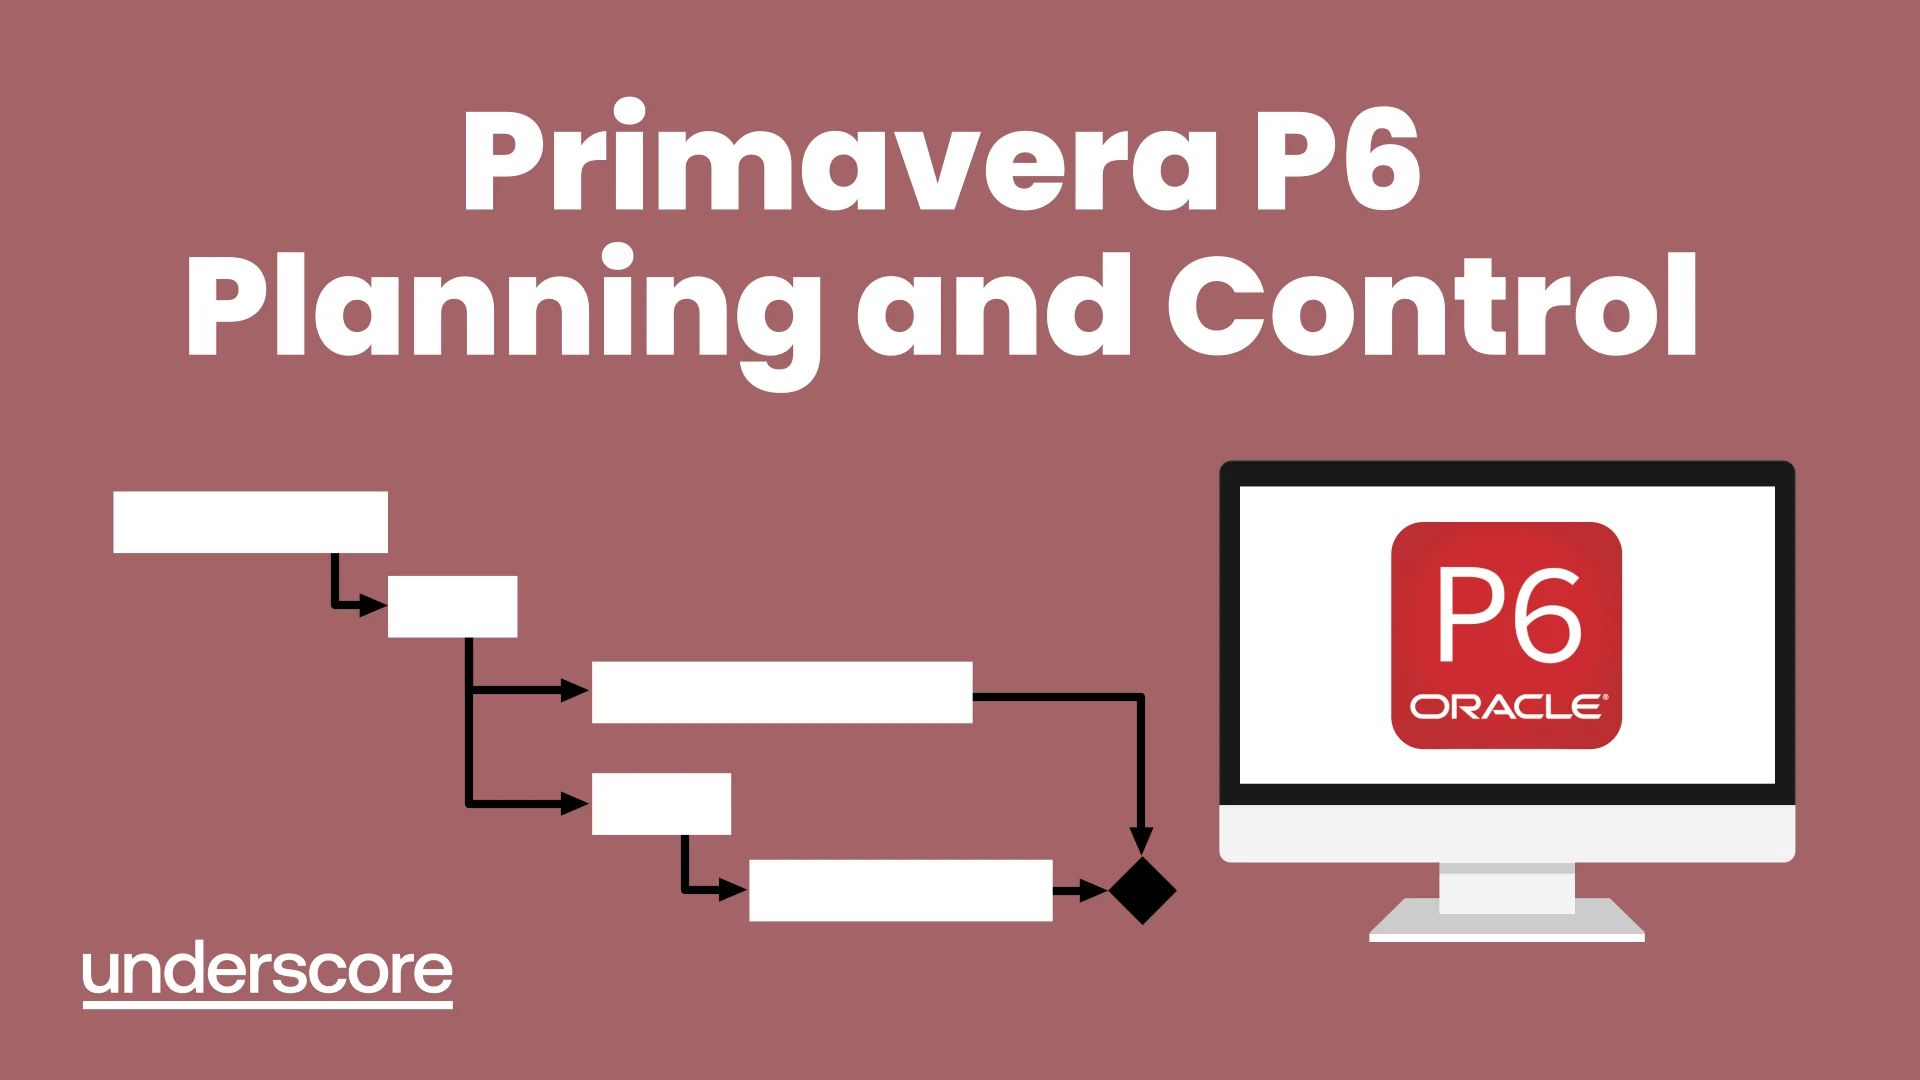 Primavera P6 Planning and Control